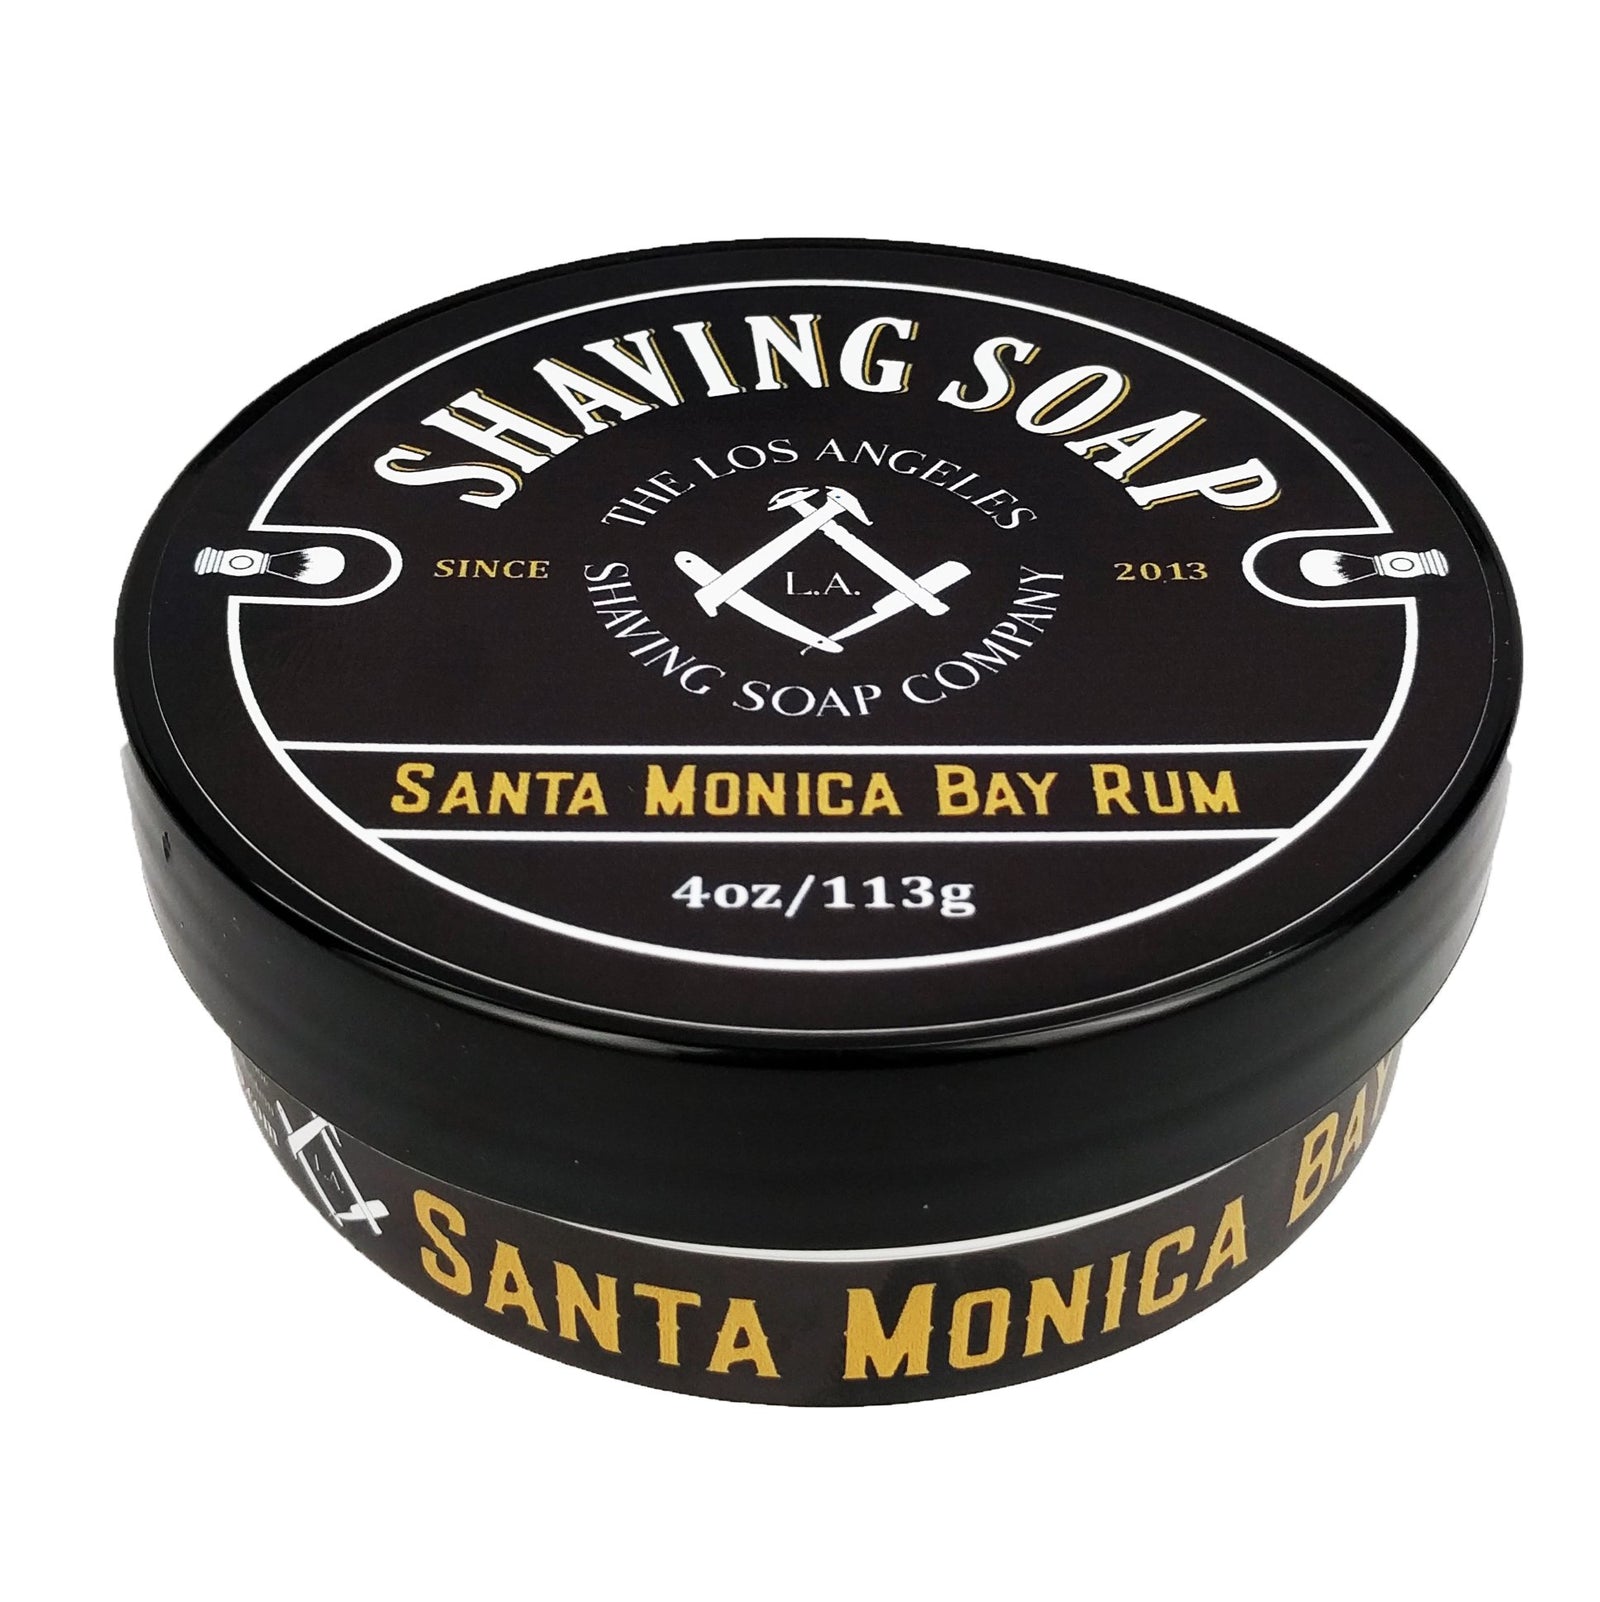 LA Shaving Soap Co - Santa Monica Bay Rum Vegan Shaving Soap